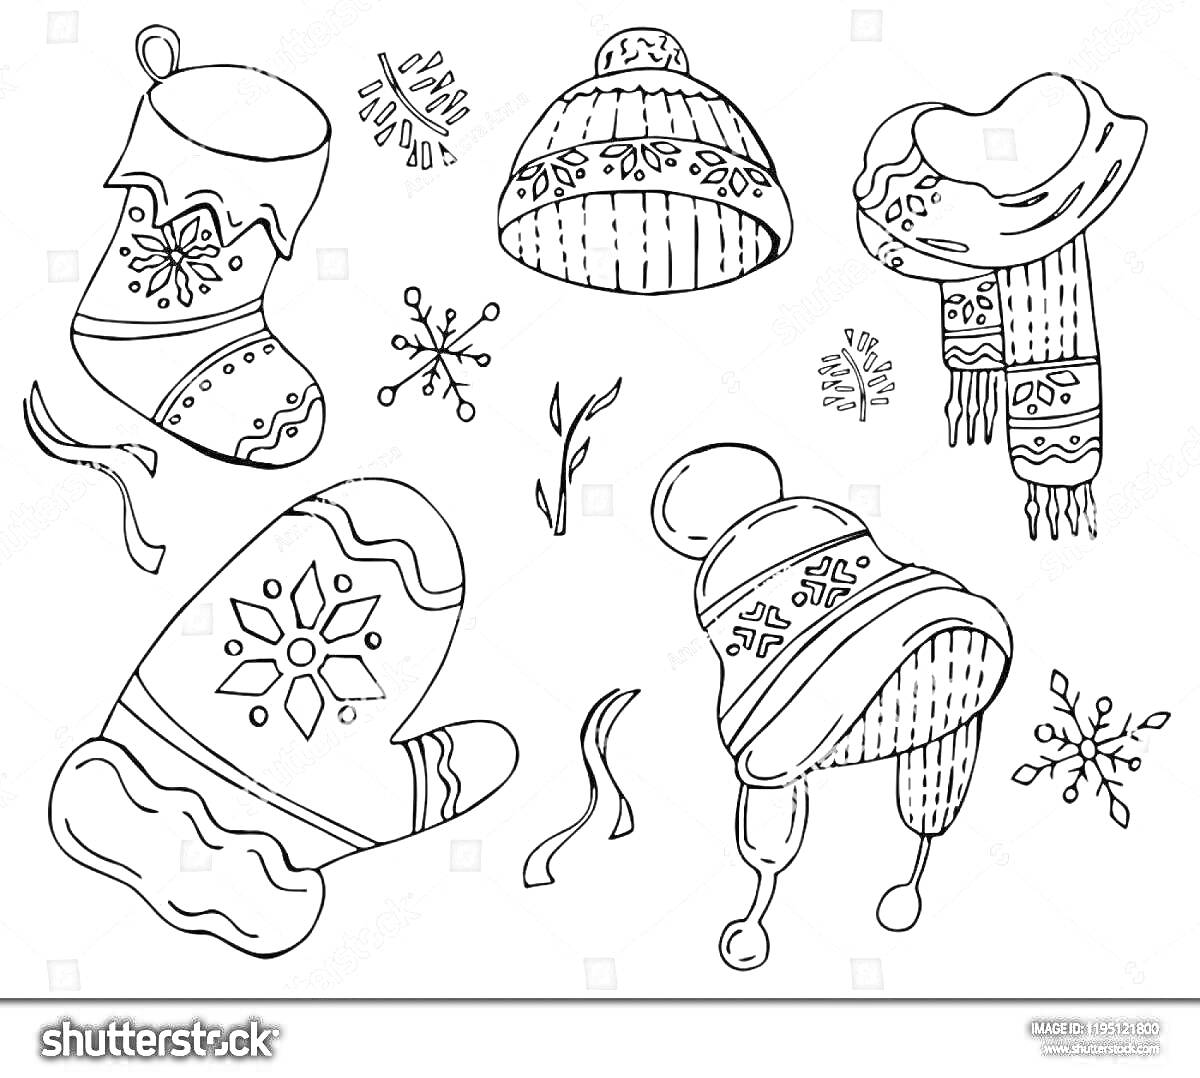 На раскраске изображено: Варежка, Шапка, Шарф, Зима, Снег, Снежинки, Зимняя одежда, Уют, Мороз